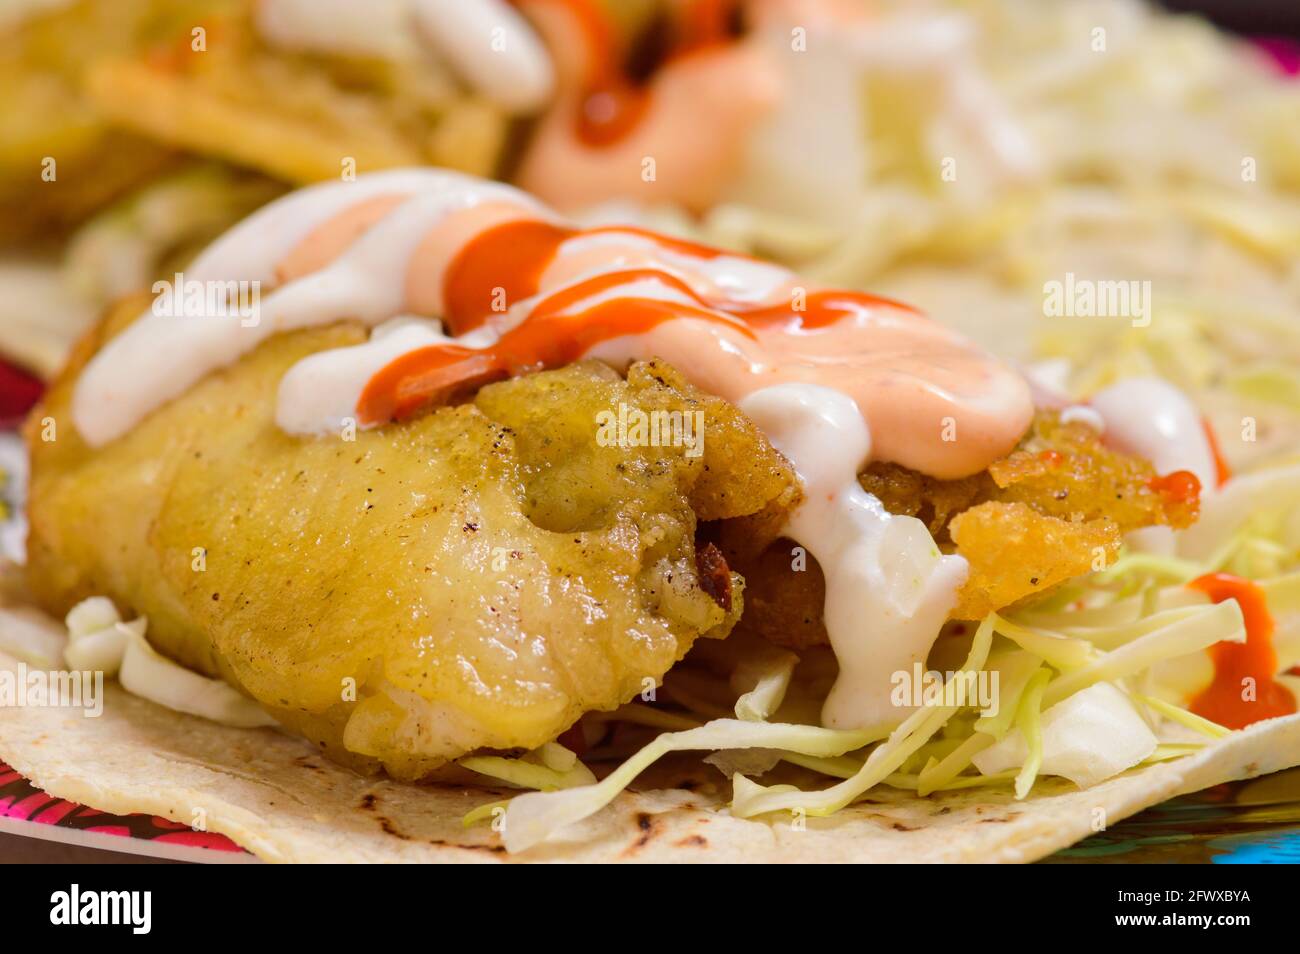 Tacos aux poissons style Basse-Californie avec garnitures Banque D'Images